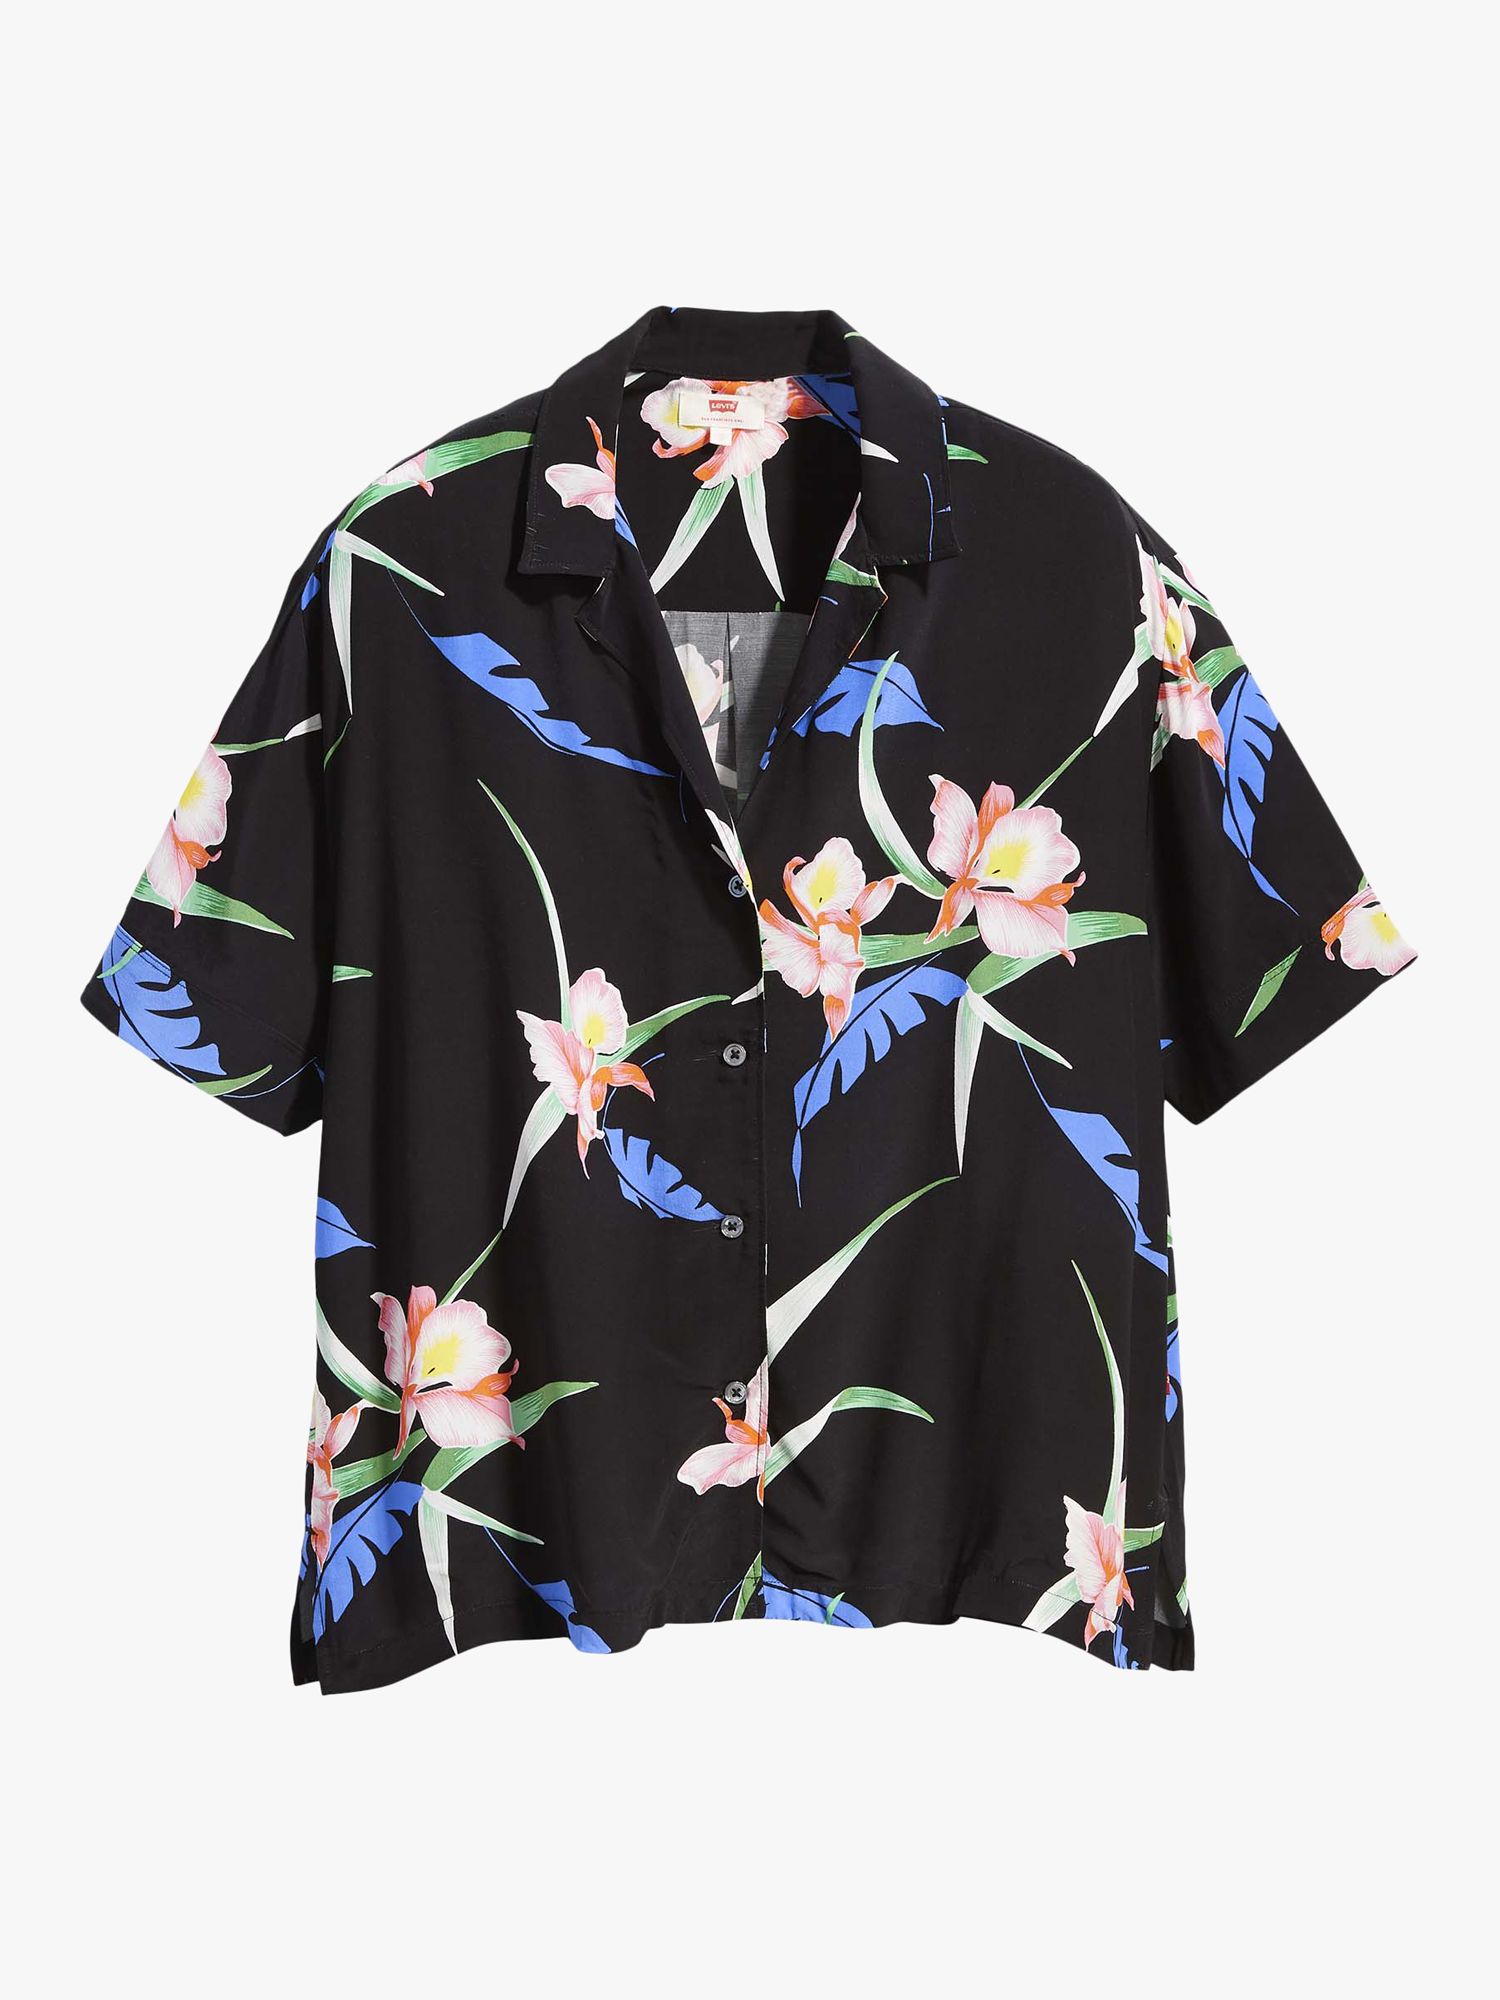 levi's floral shirt